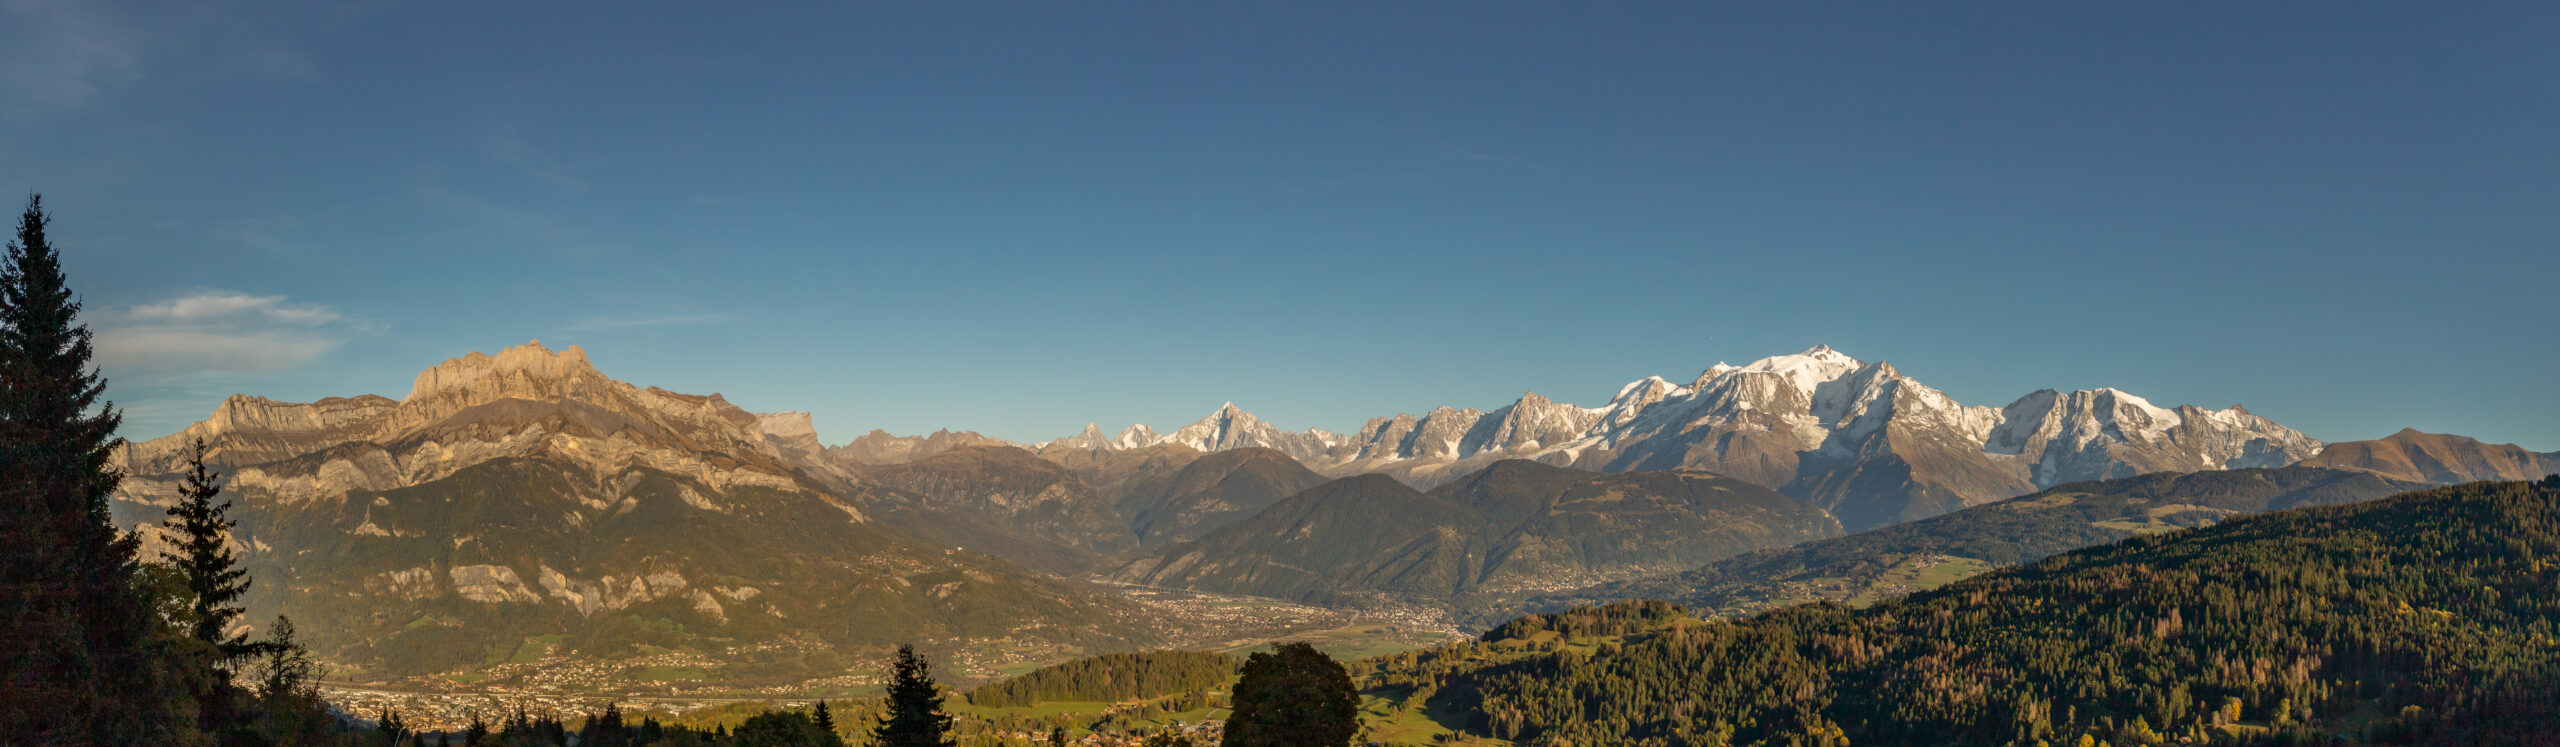 mont blanc vallee de l arve scaled - Développeur de site web et d'application mobile en Haute-Savoie - Jérémie Bottollier Curtet